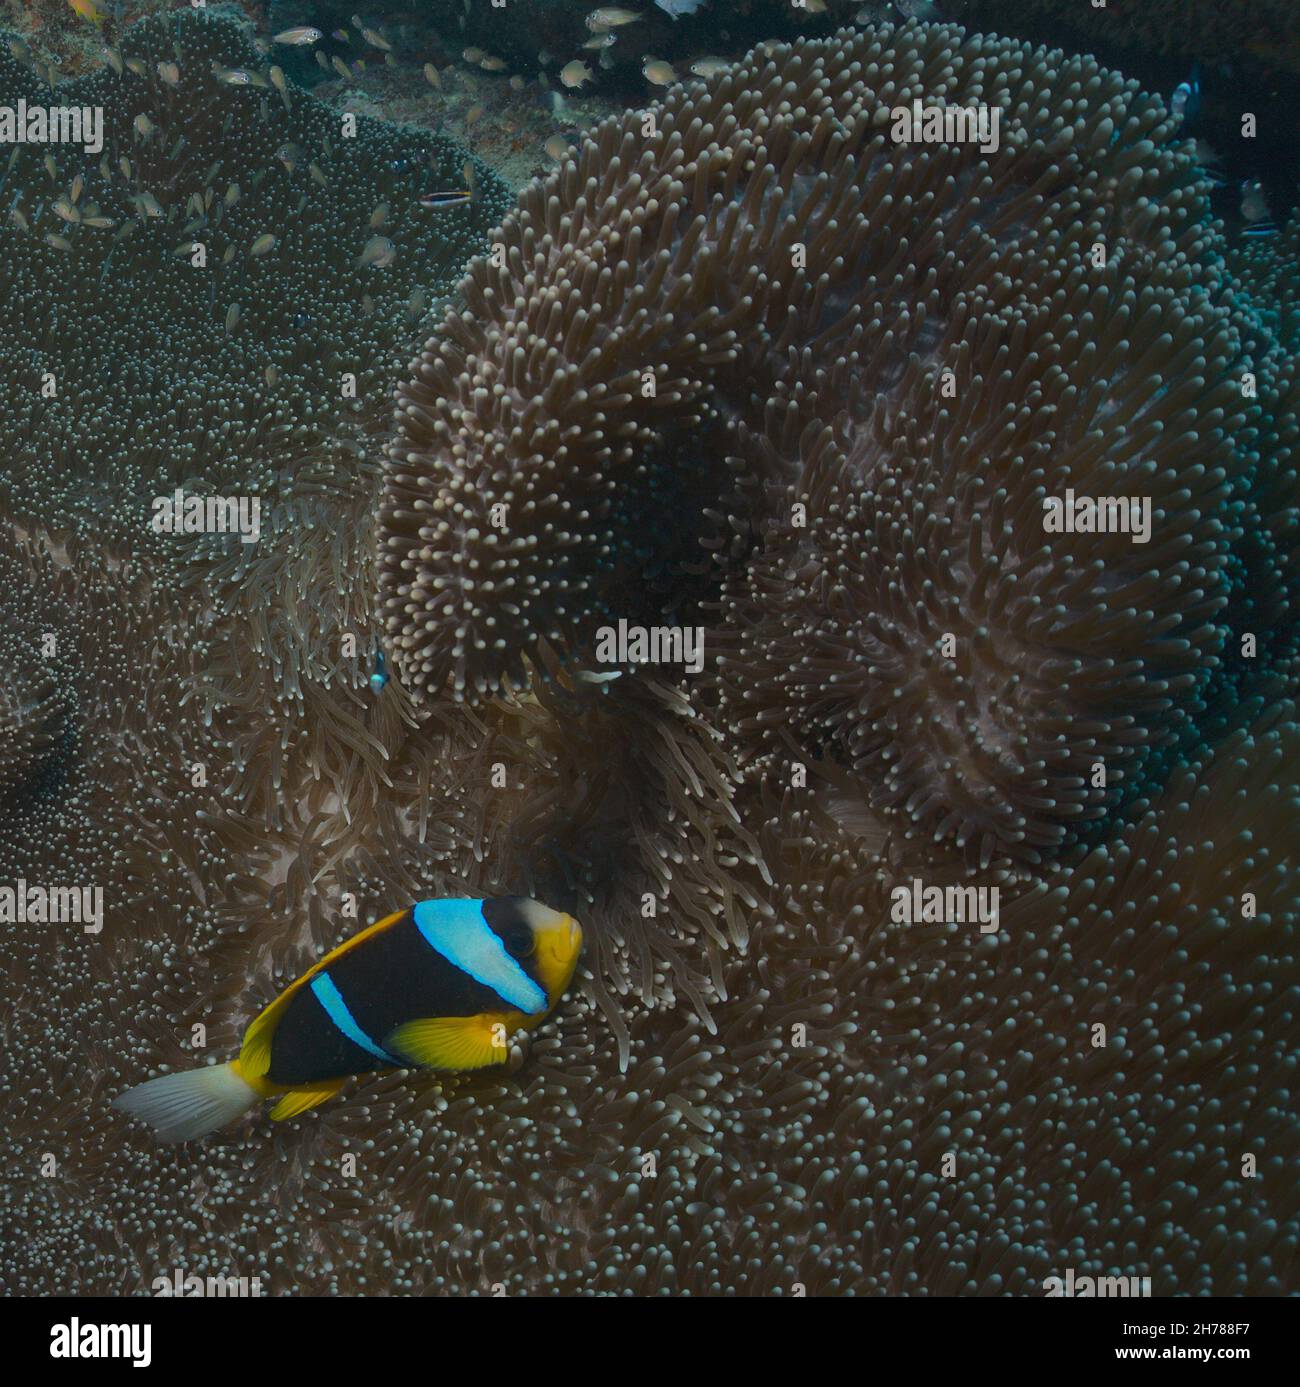 shy allard's anemonefish takes shelter in swirling sea anemone in the watamu marine park, kenya Stock Photo